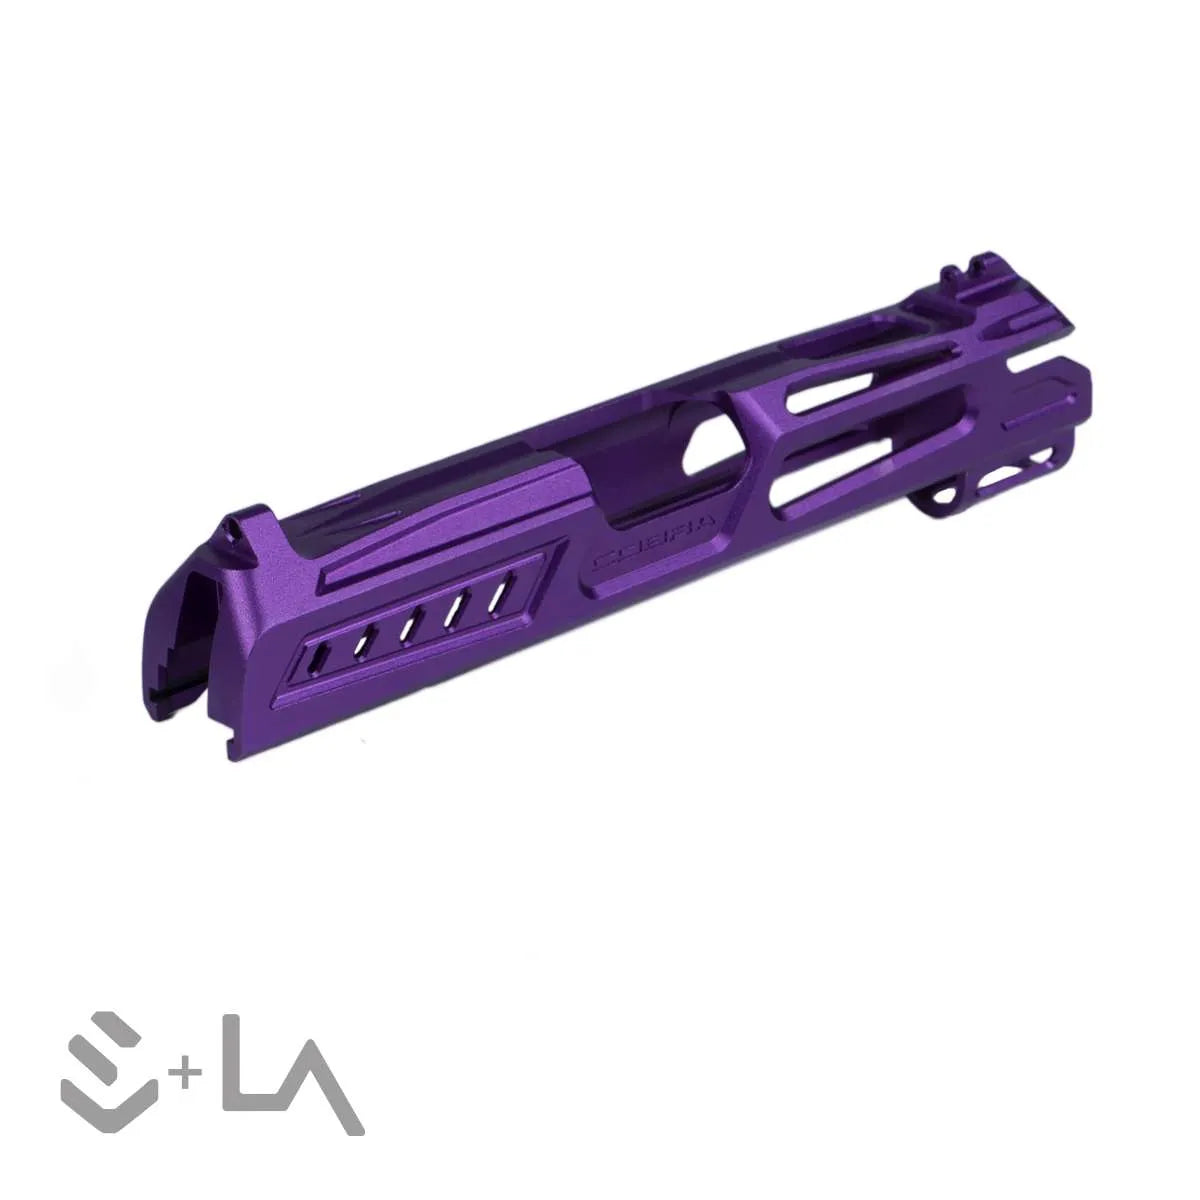 LA Capa Customs x SpeedQB 4.3 “COBRA” Aluminum Slide - Purple